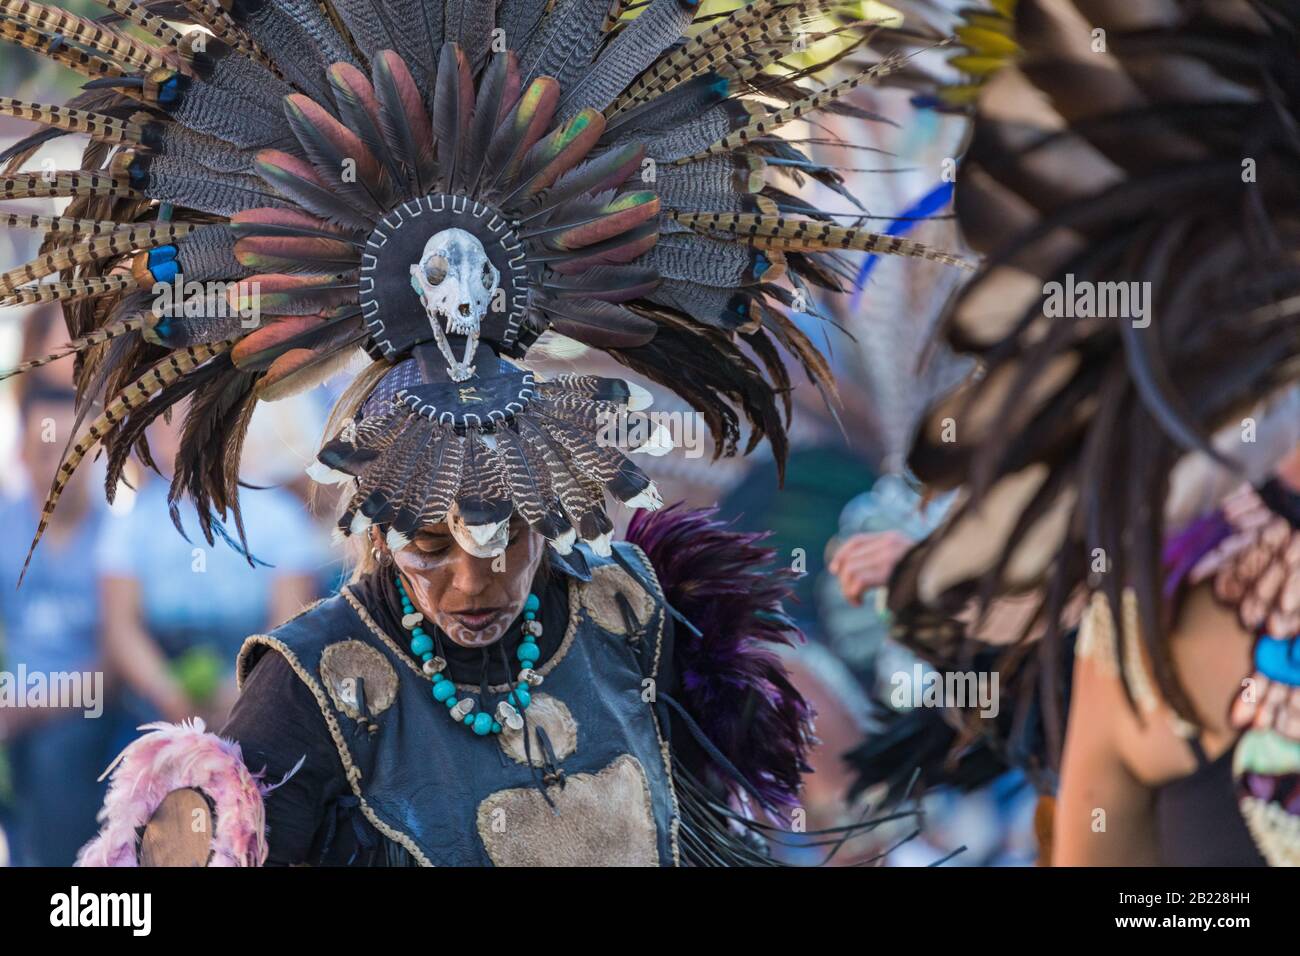 MEXICO, MEXIQUE - 17 FÉVRIER 2020 : danseuses aztèques en costumes traditionnels dansant dans le Zocalo à Mexico, DF, Mexique. Banque D'Images